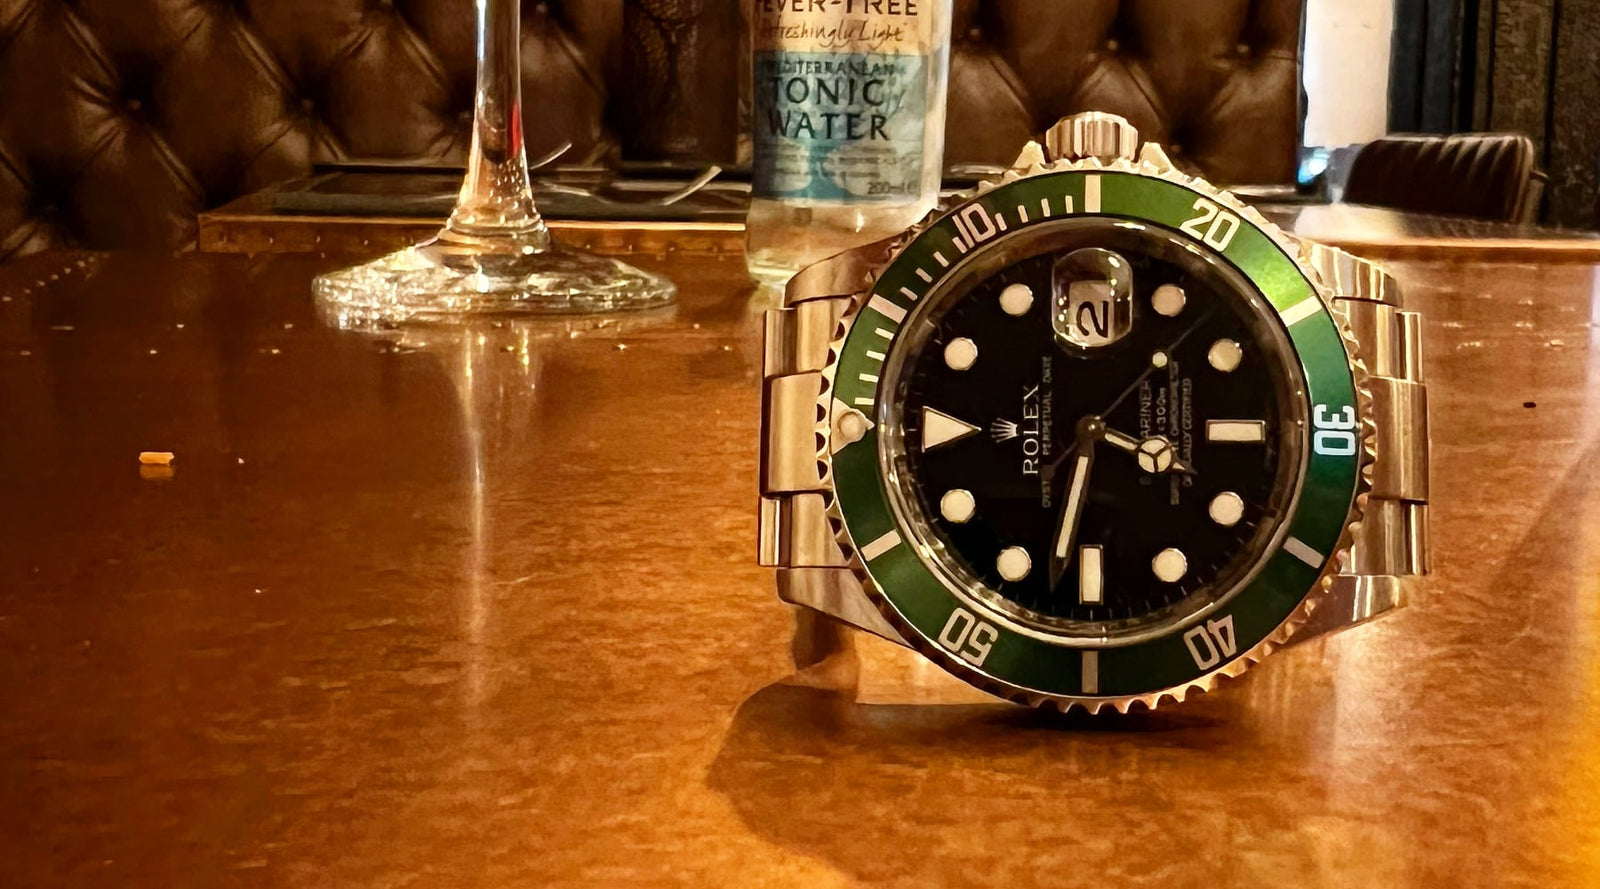 Rolex Submariner 116610LV Hulk Watches For Sale